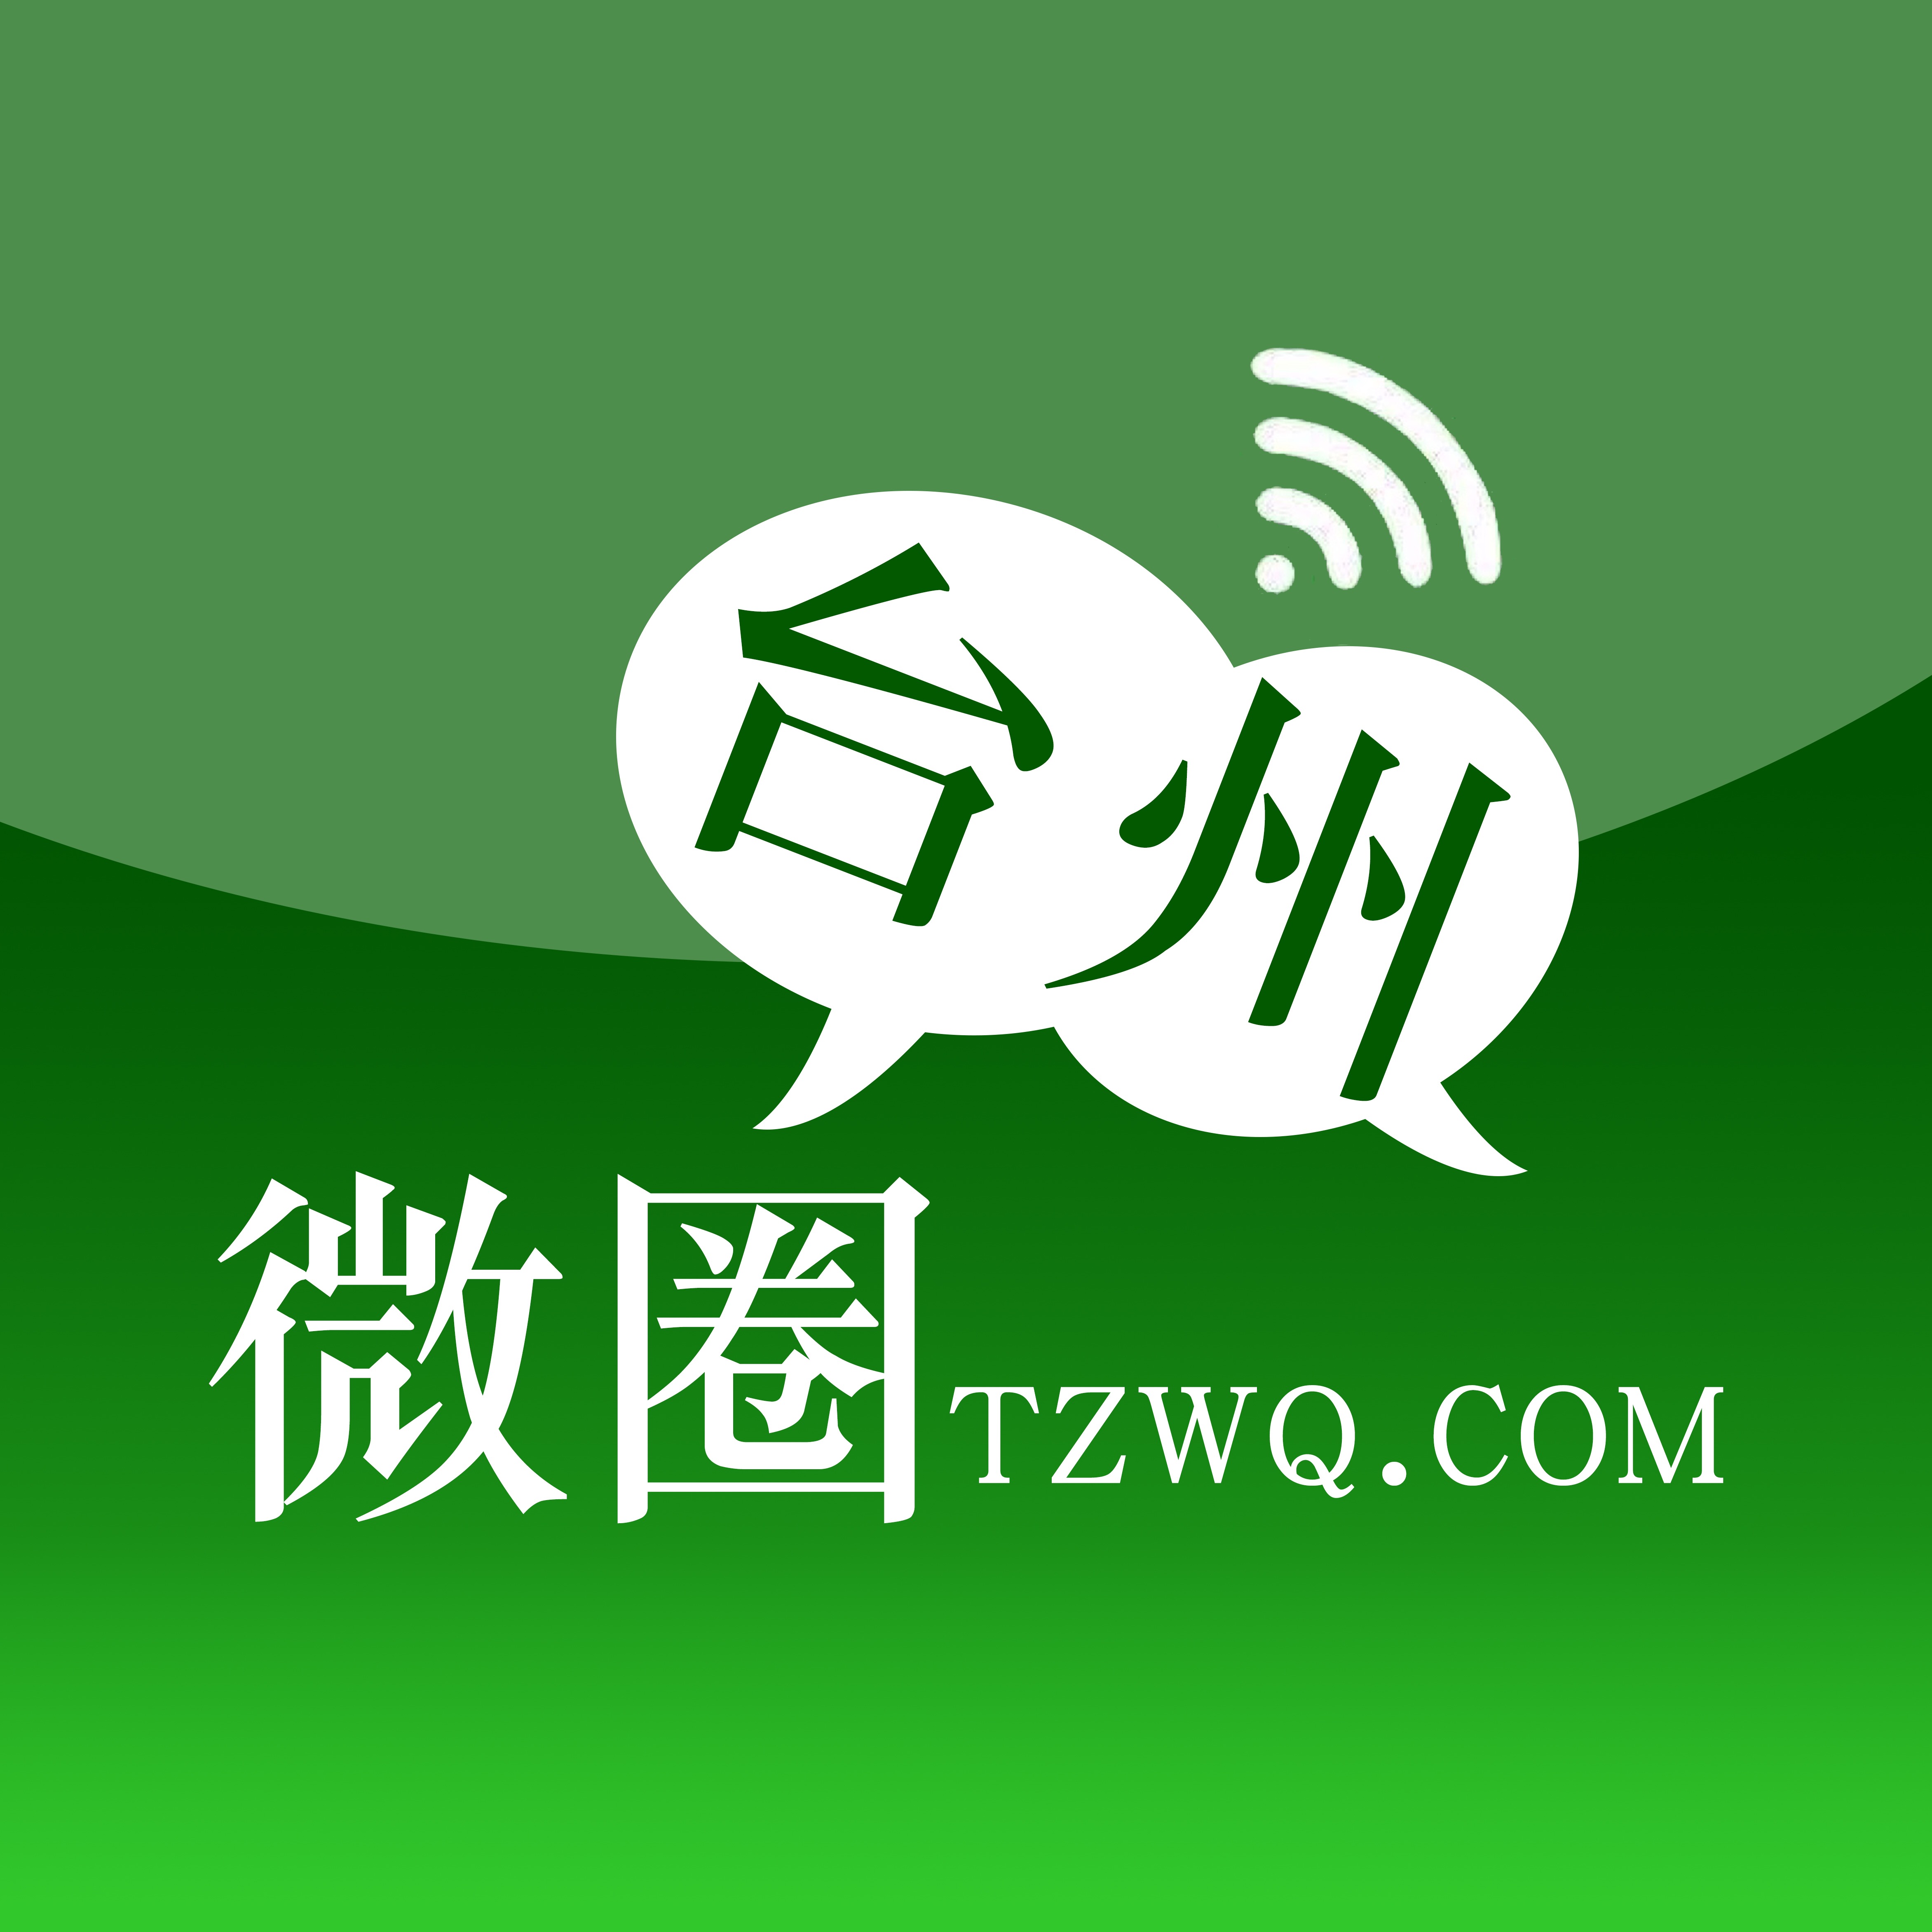 TZWQ.COM